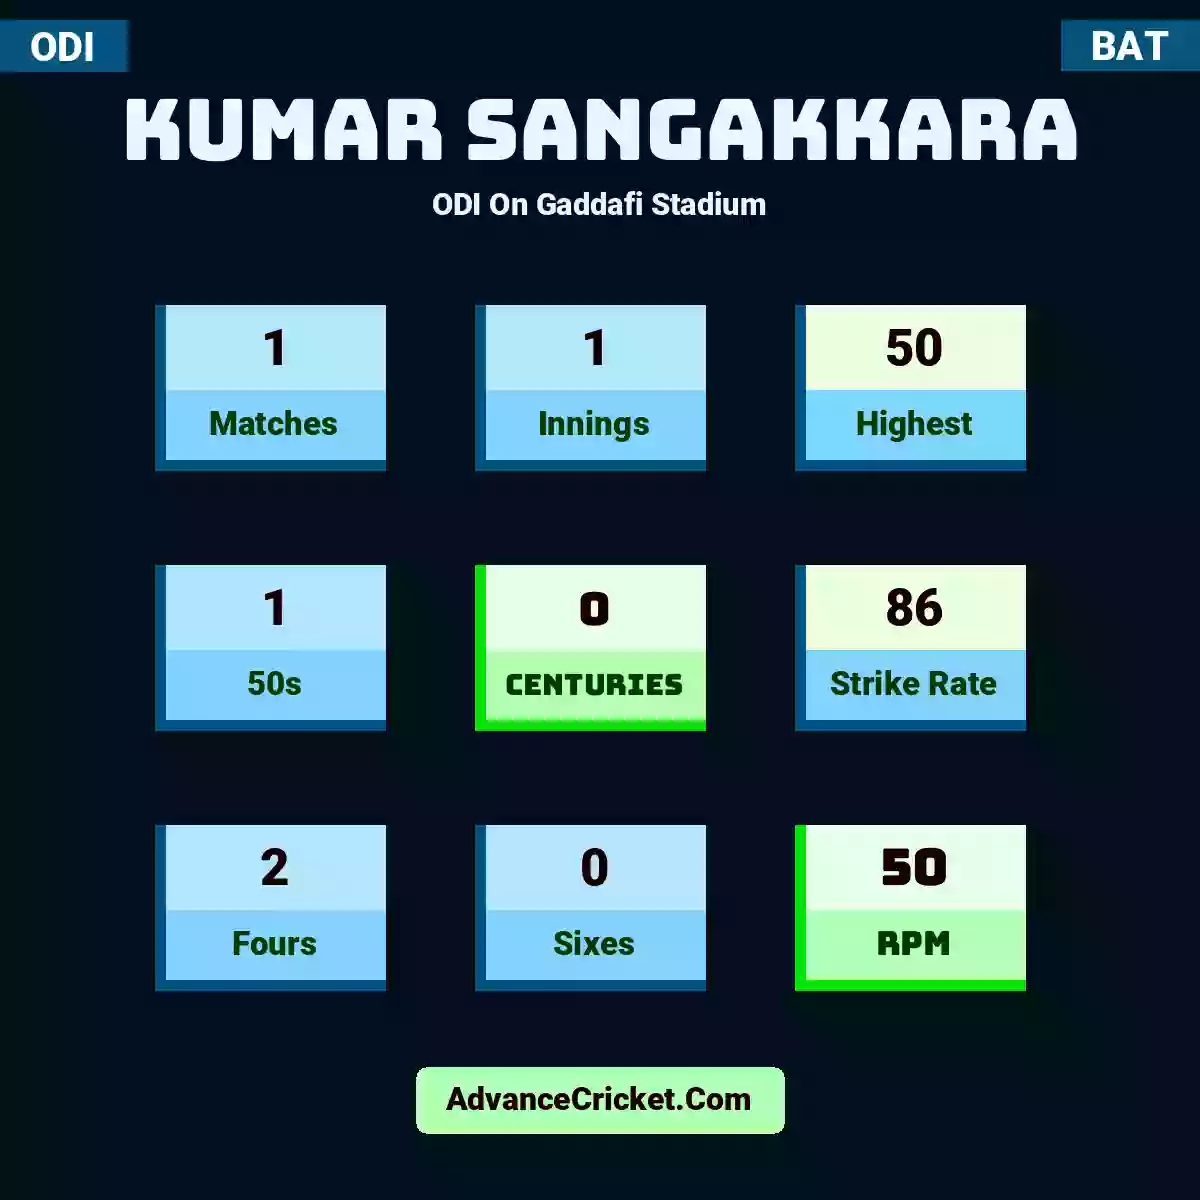 Kumar Sangakkara ODI  On Gaddafi Stadium, Kumar Sangakkara played 1 matches, scored 50 runs as highest, 1 half-centuries, and 0 centuries, with a strike rate of 86. K.Sangakkara hit 2 fours and 0 sixes, with an RPM of 50.